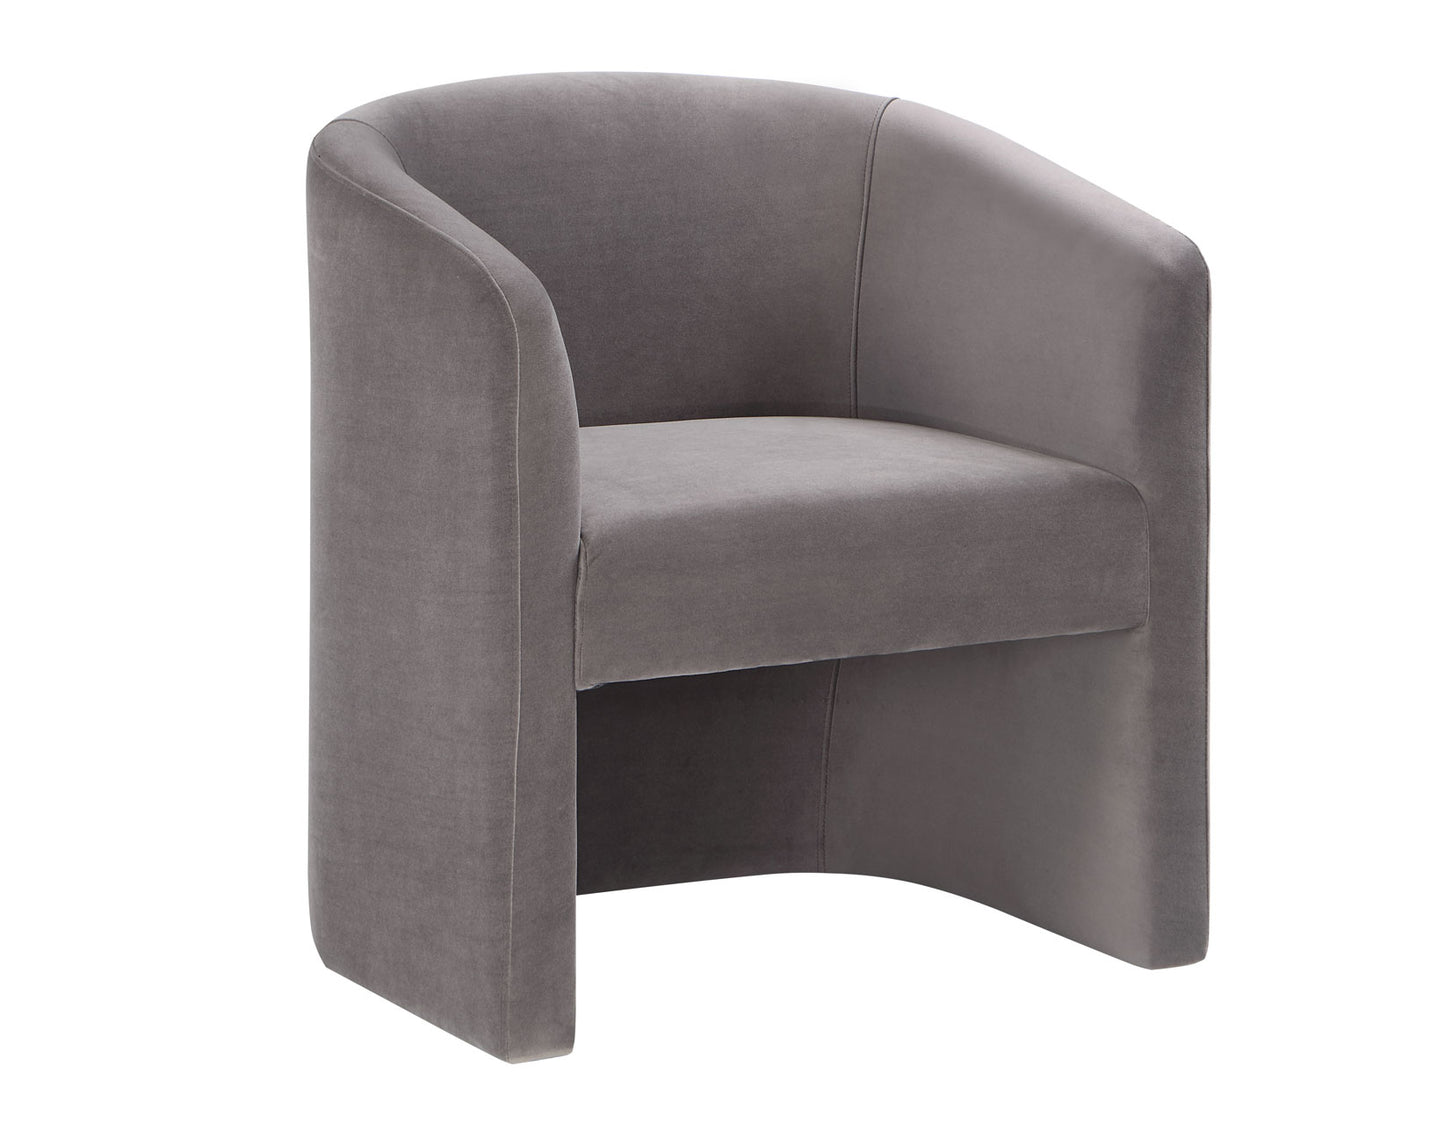 Iris Upholstered Chair, Fog